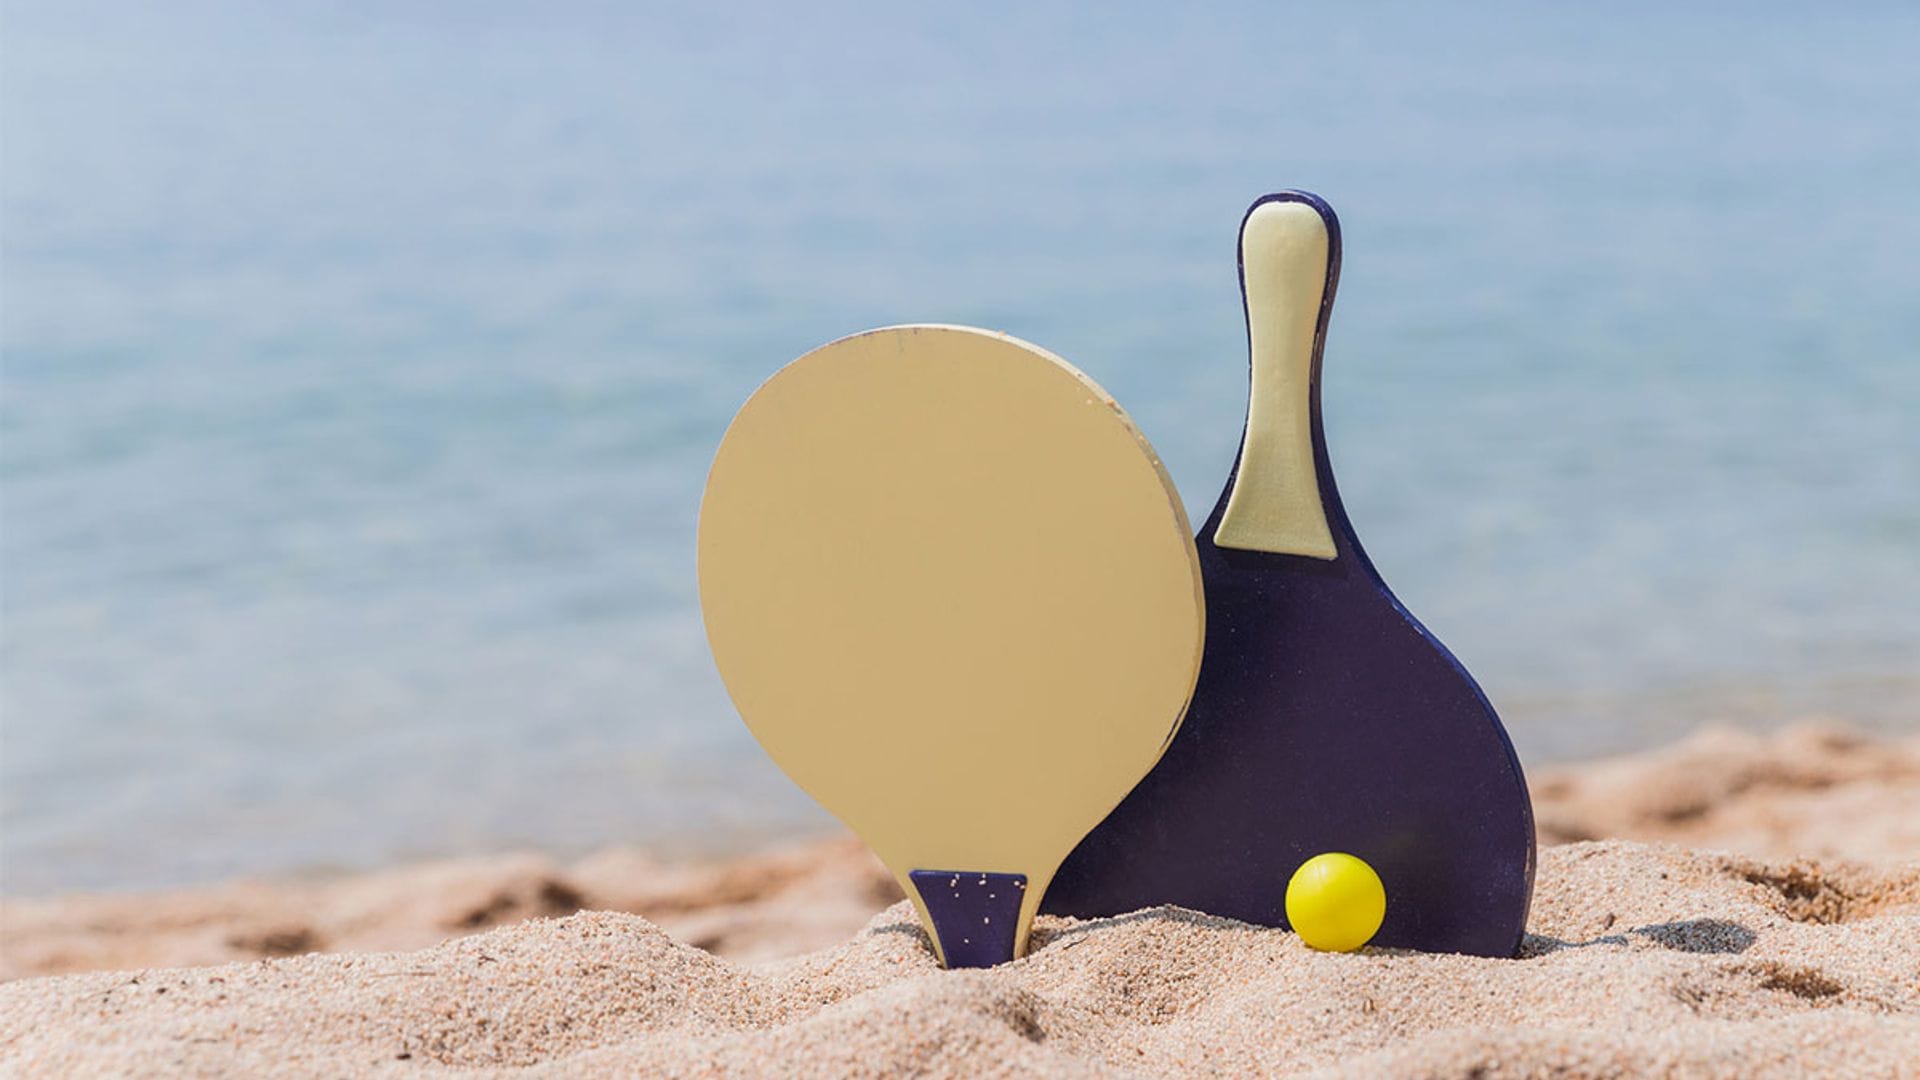 Seis palas de playa para hacer ejercicio y disfrutar de un buen rato con amigos y familia